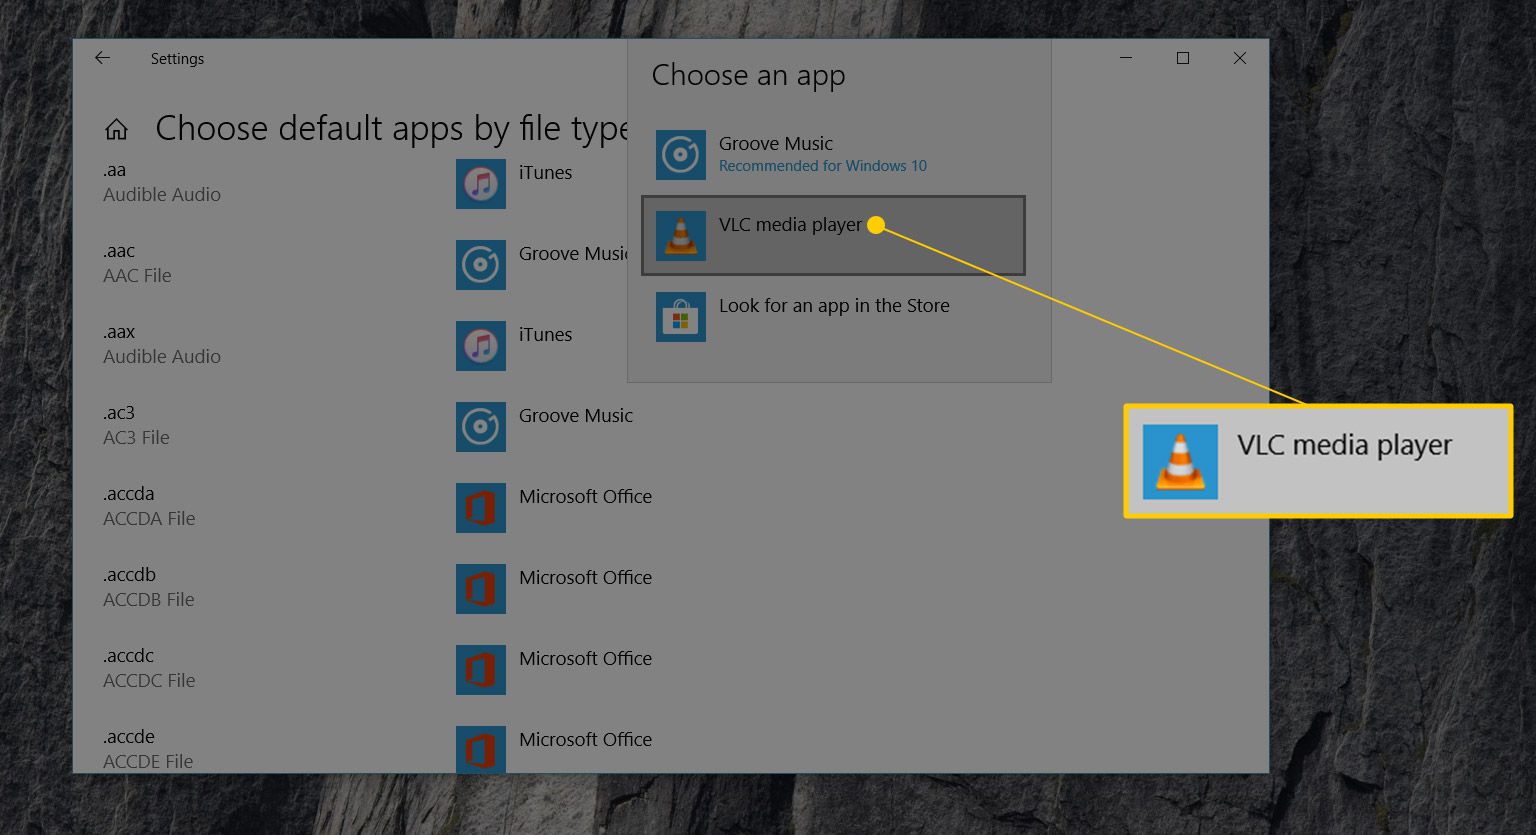 Ícone do VLC media player no submenu Escolher um aplicativo na janela Escolher aplicativos padrão por tipo de arquivo